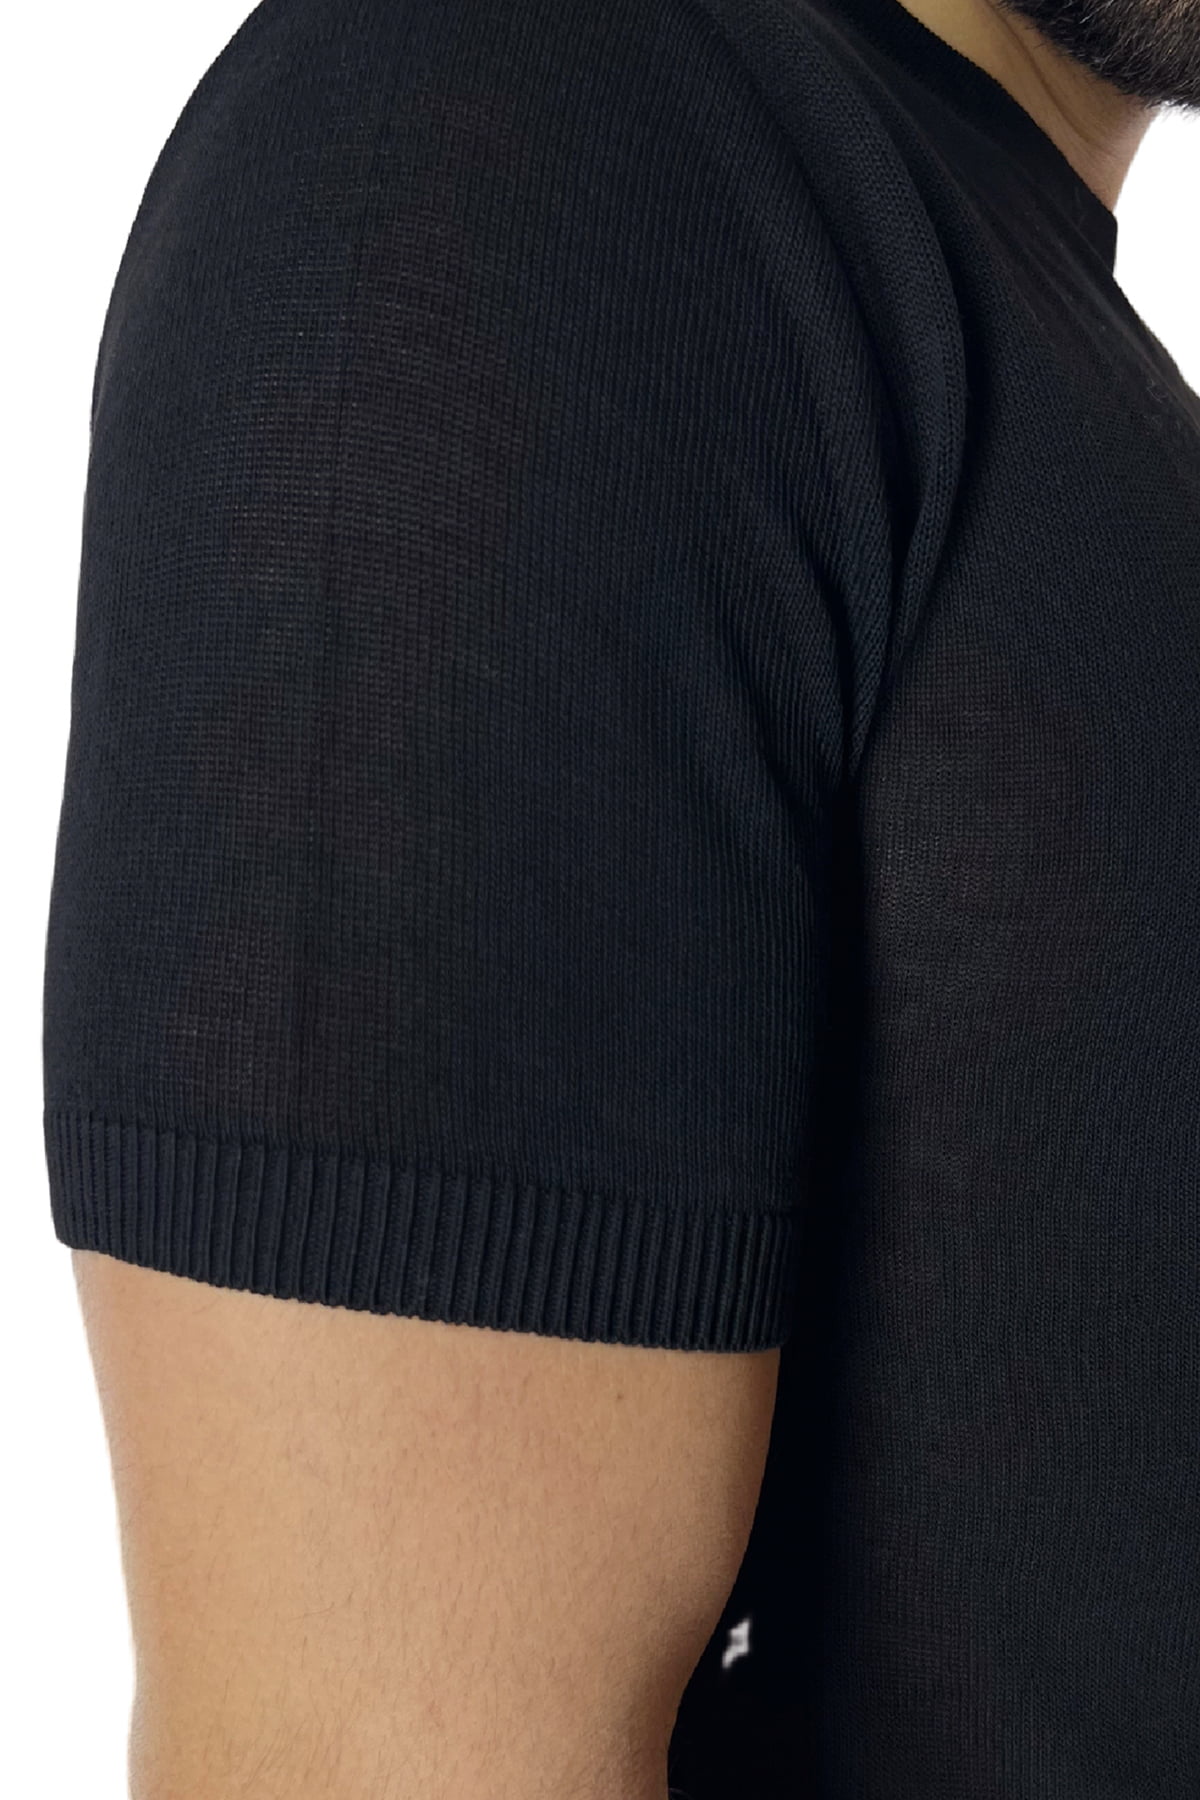 T-shirt uomo nera in viscosa mezze maniche scollo largo made in italy